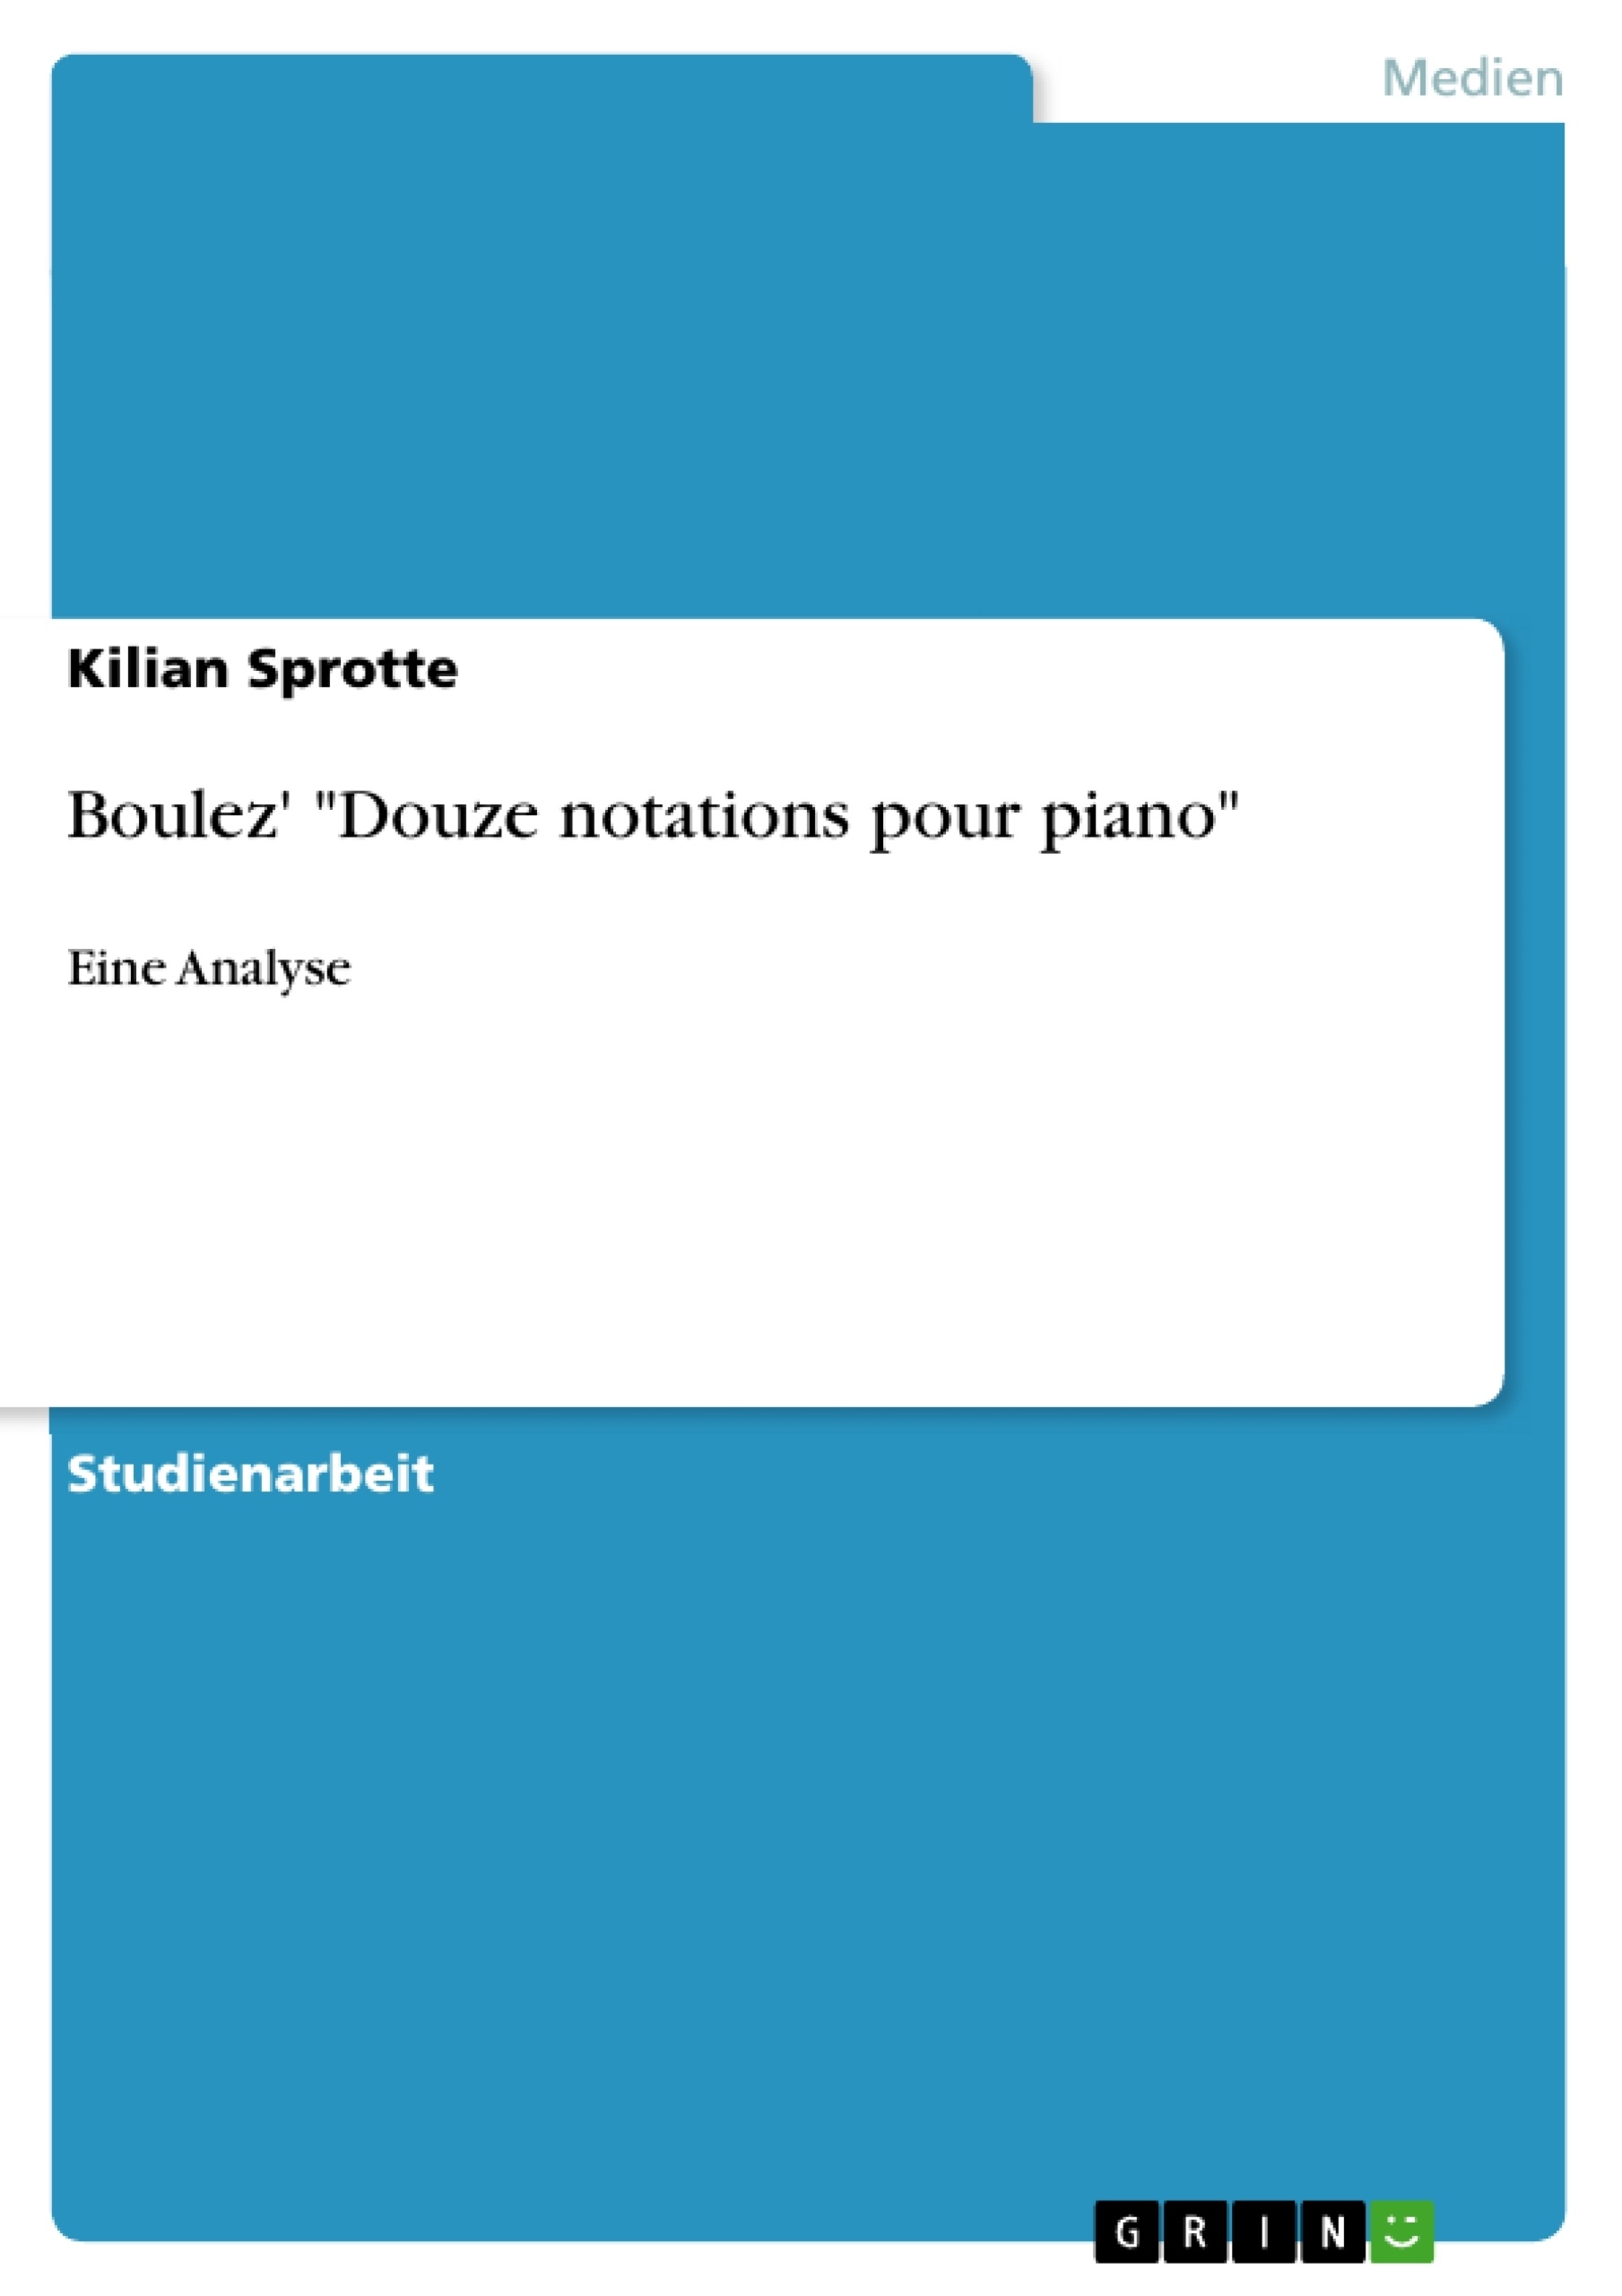 Title: Boulez' "Douze notations pour piano"